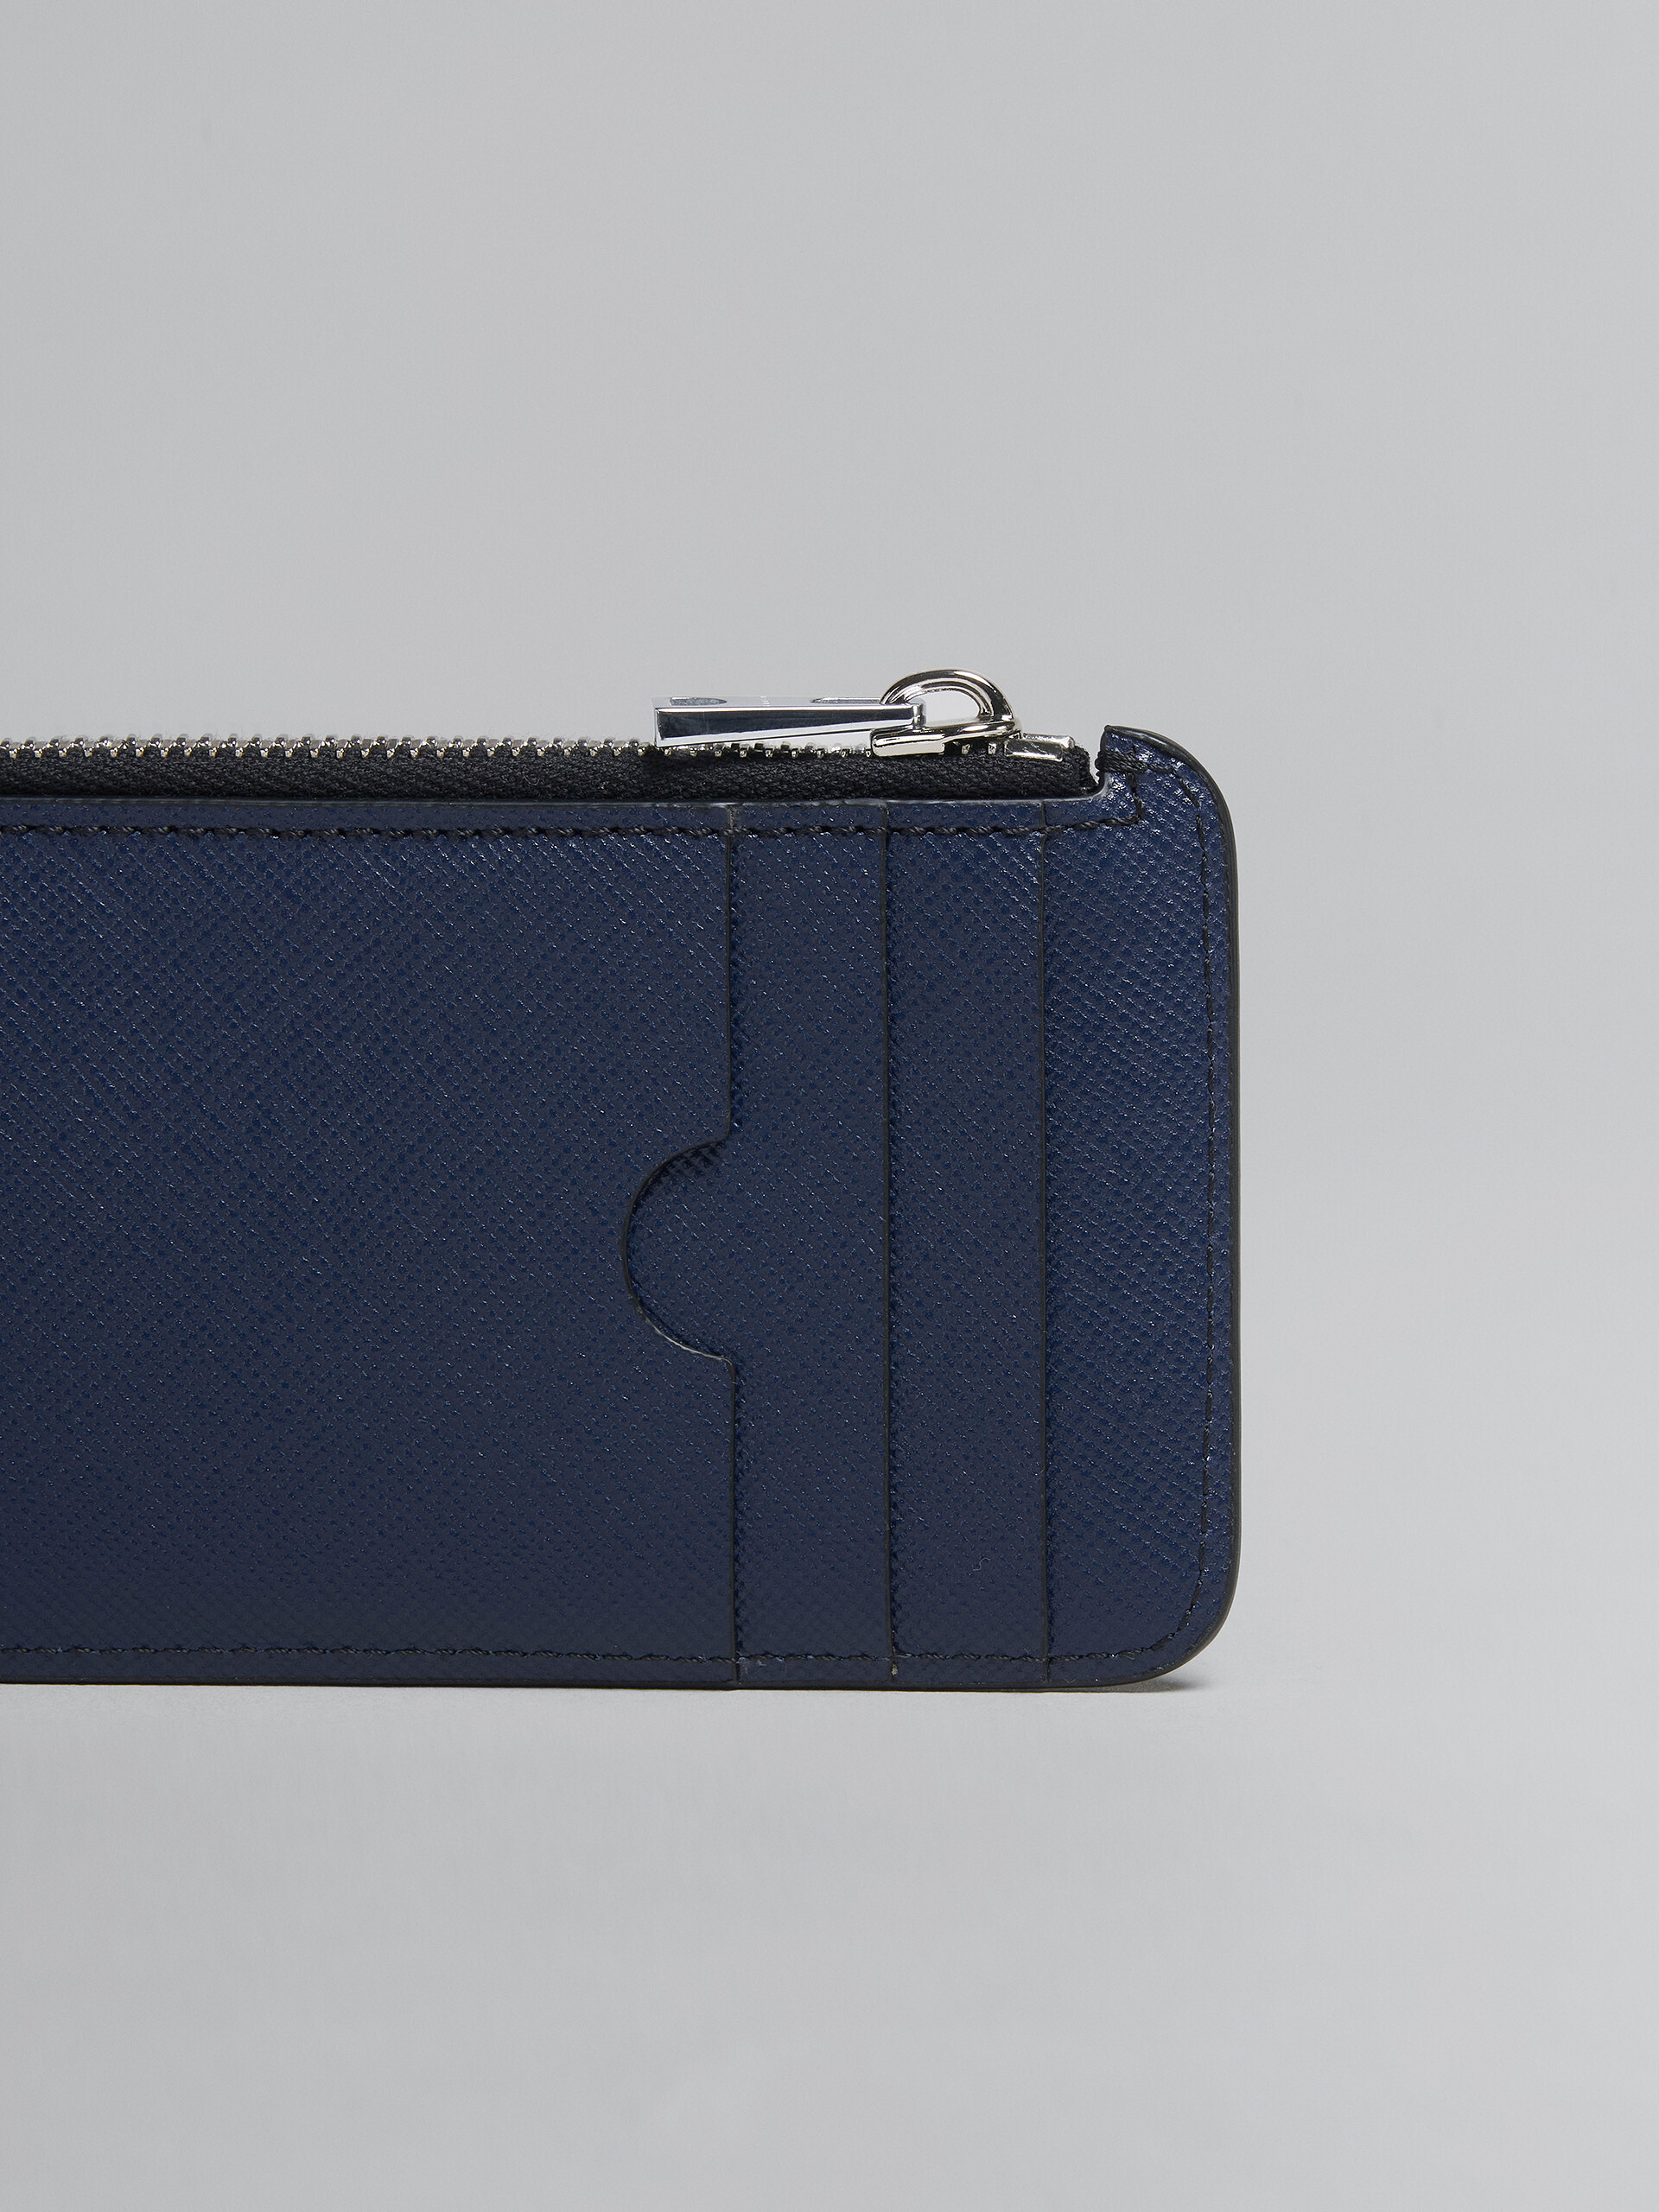 Kartenetui mit umlaufendem Reißverschluss aus Saffiano-Leder in Blau und Schwarz - Brieftaschen - Image 4